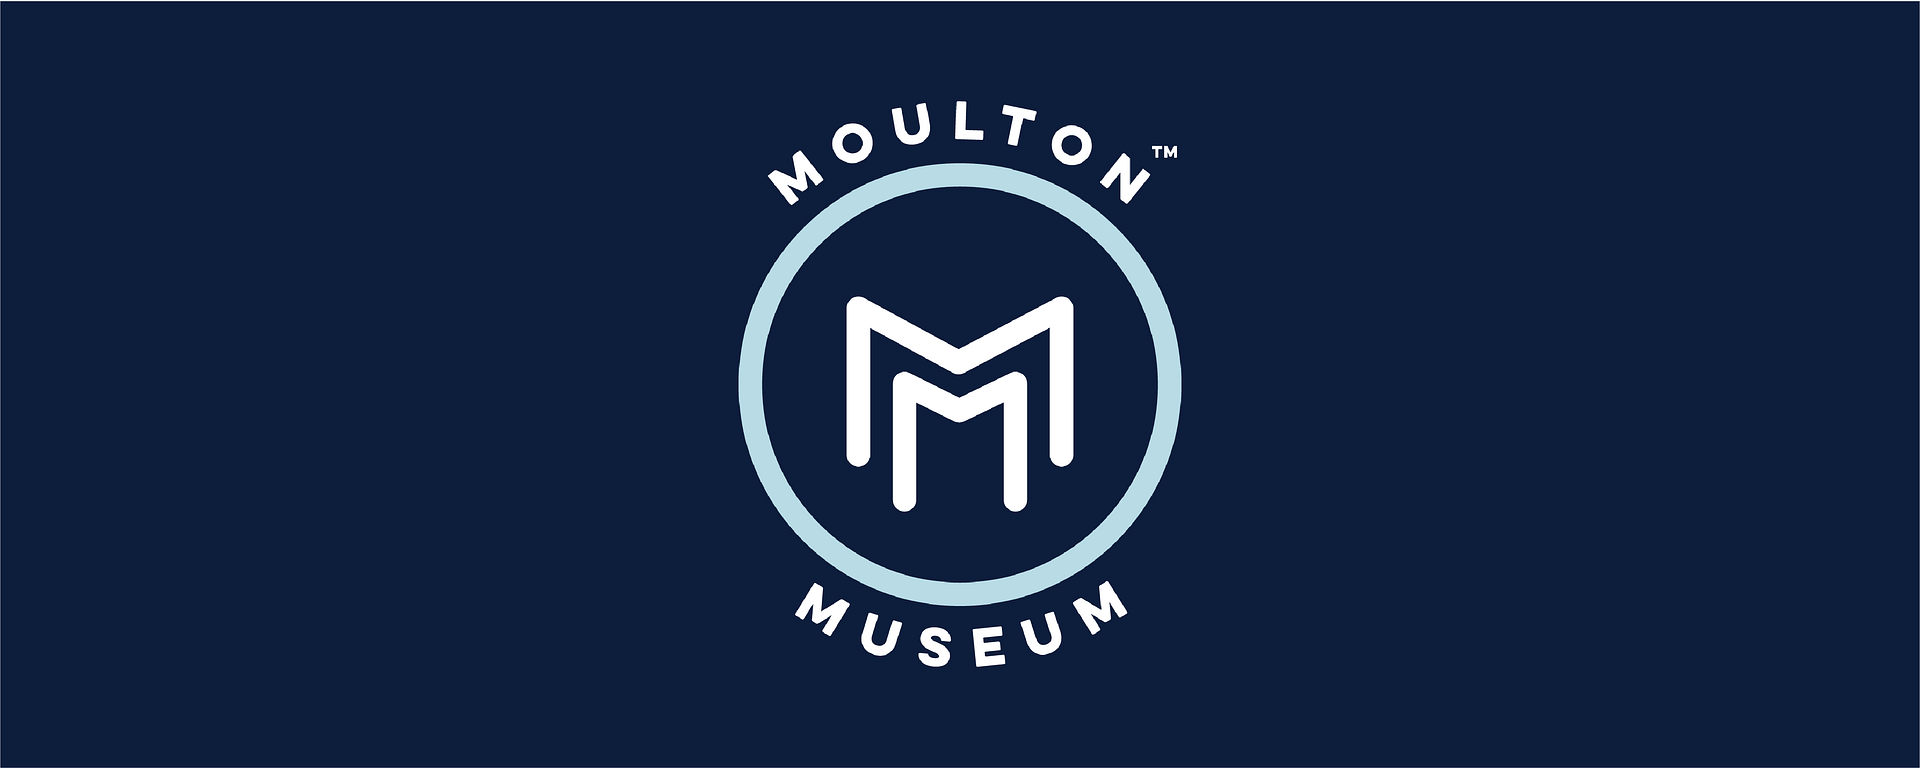 3Moulton_Museum_DARK_Circle_Logo